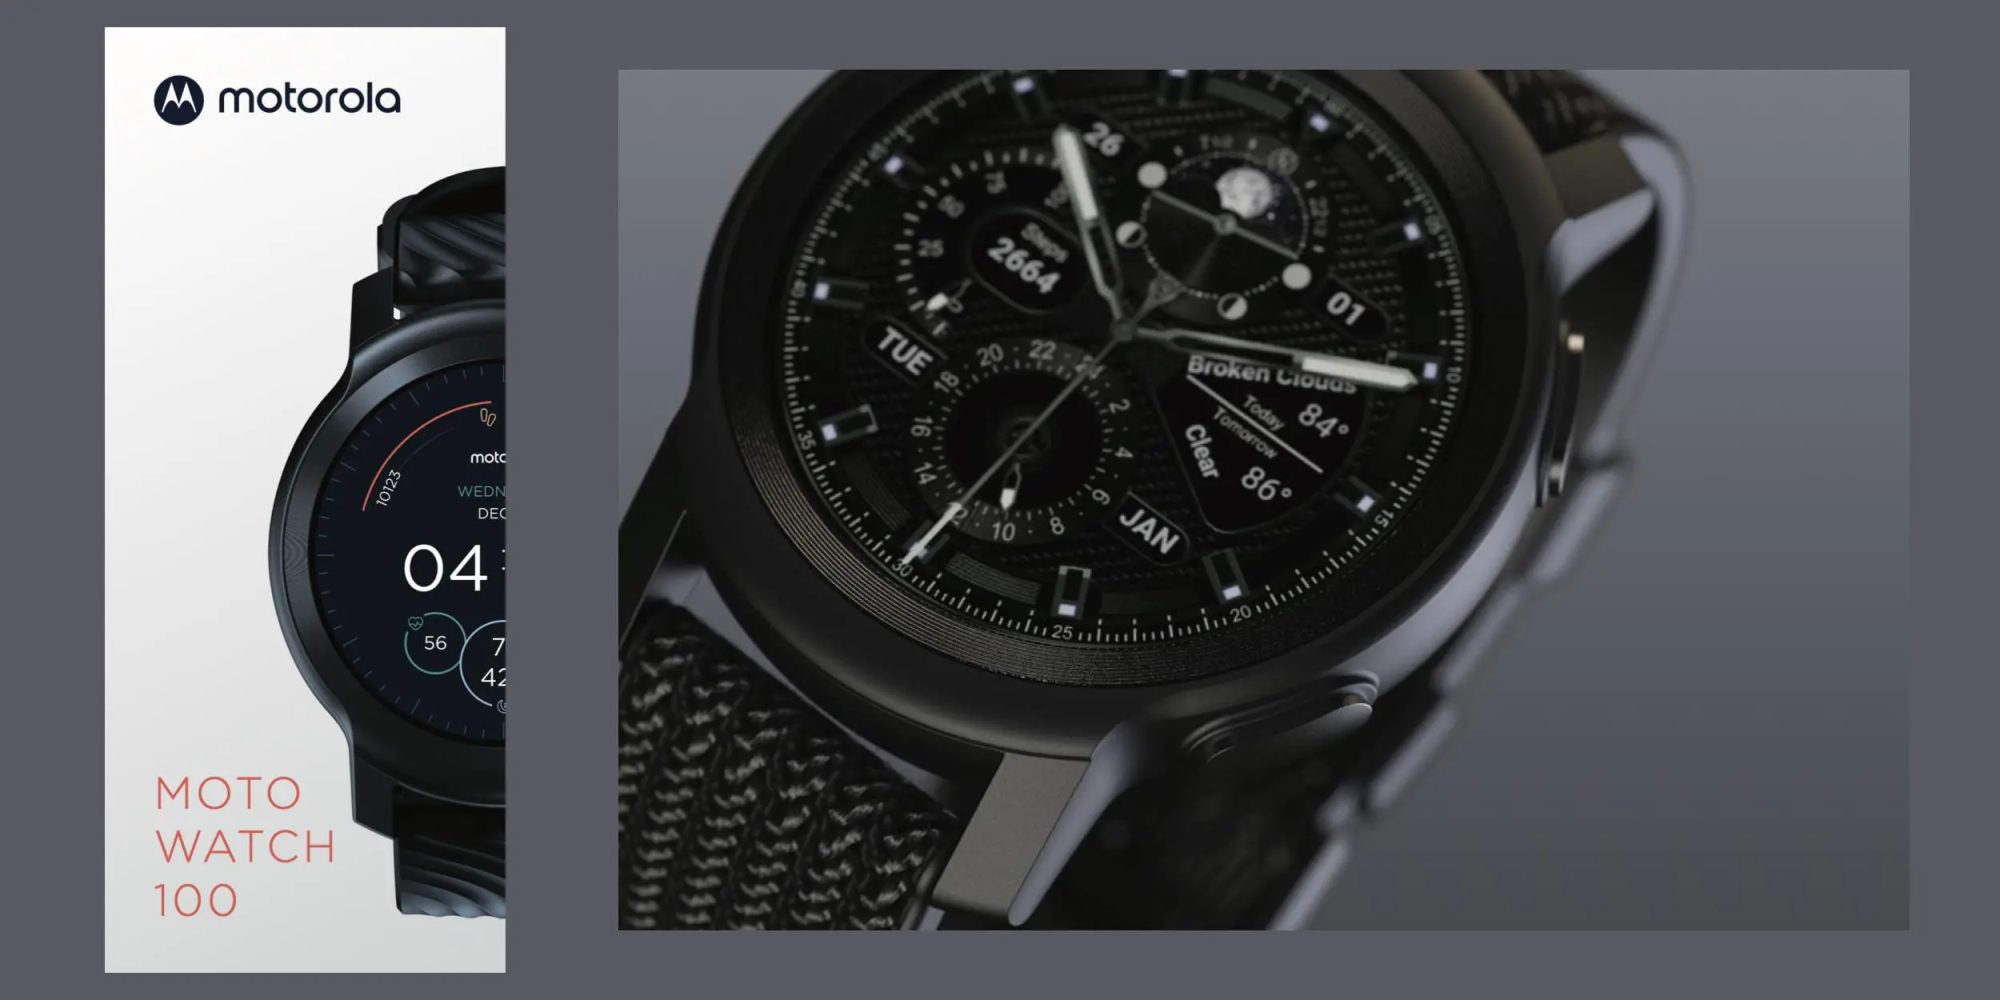 Moto Watch 100 - так називатиметься наступний смарт-годинник, який вийде під брендом Motorola